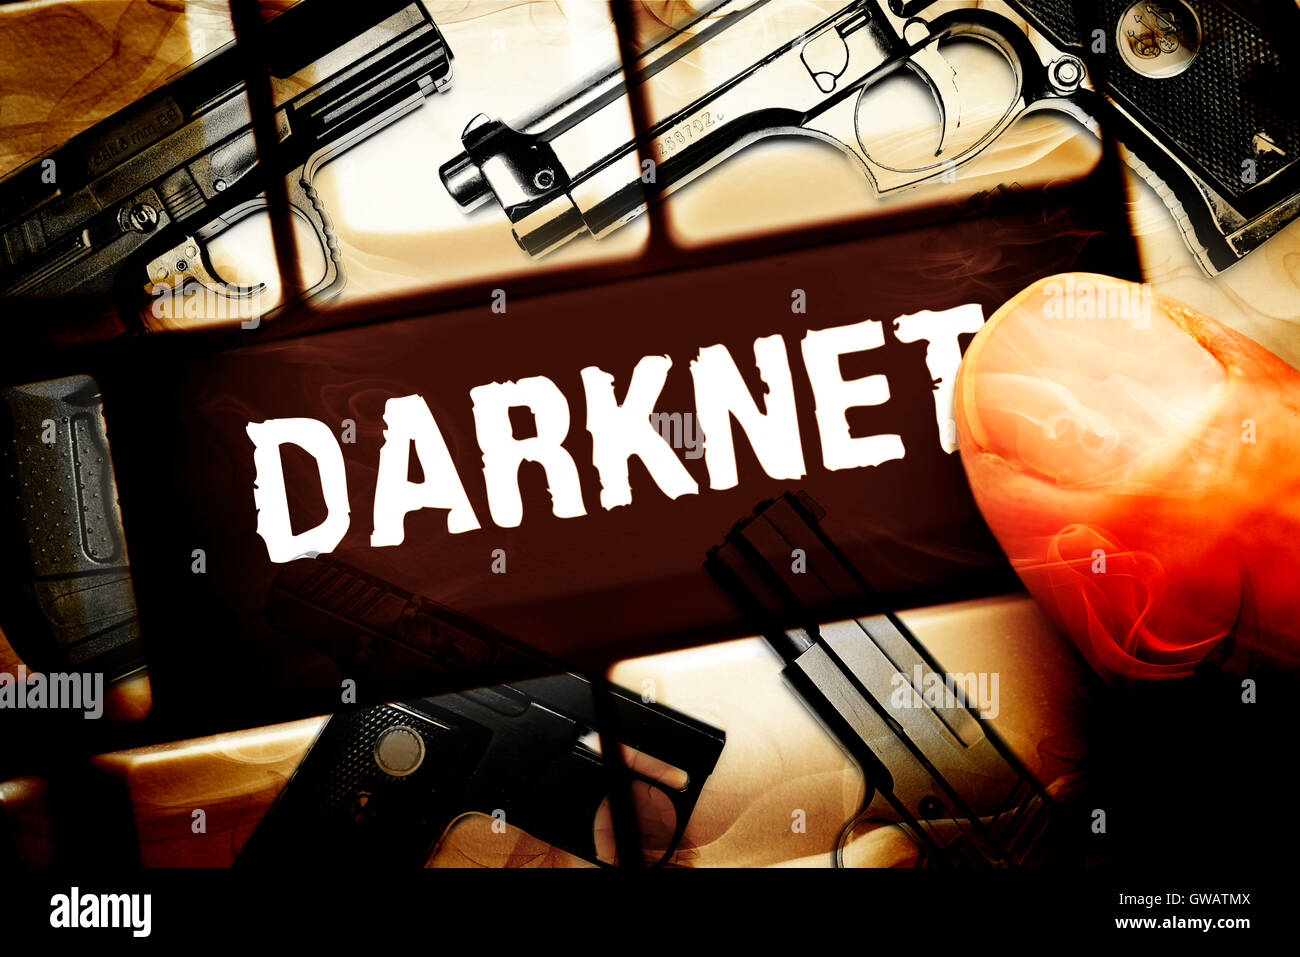 Chiave del computer con l'etichetta Darknet e armi portatili, arma di acquisto nelle Darknet, Computertaste mit der Aufschrift Dark Foto Stock